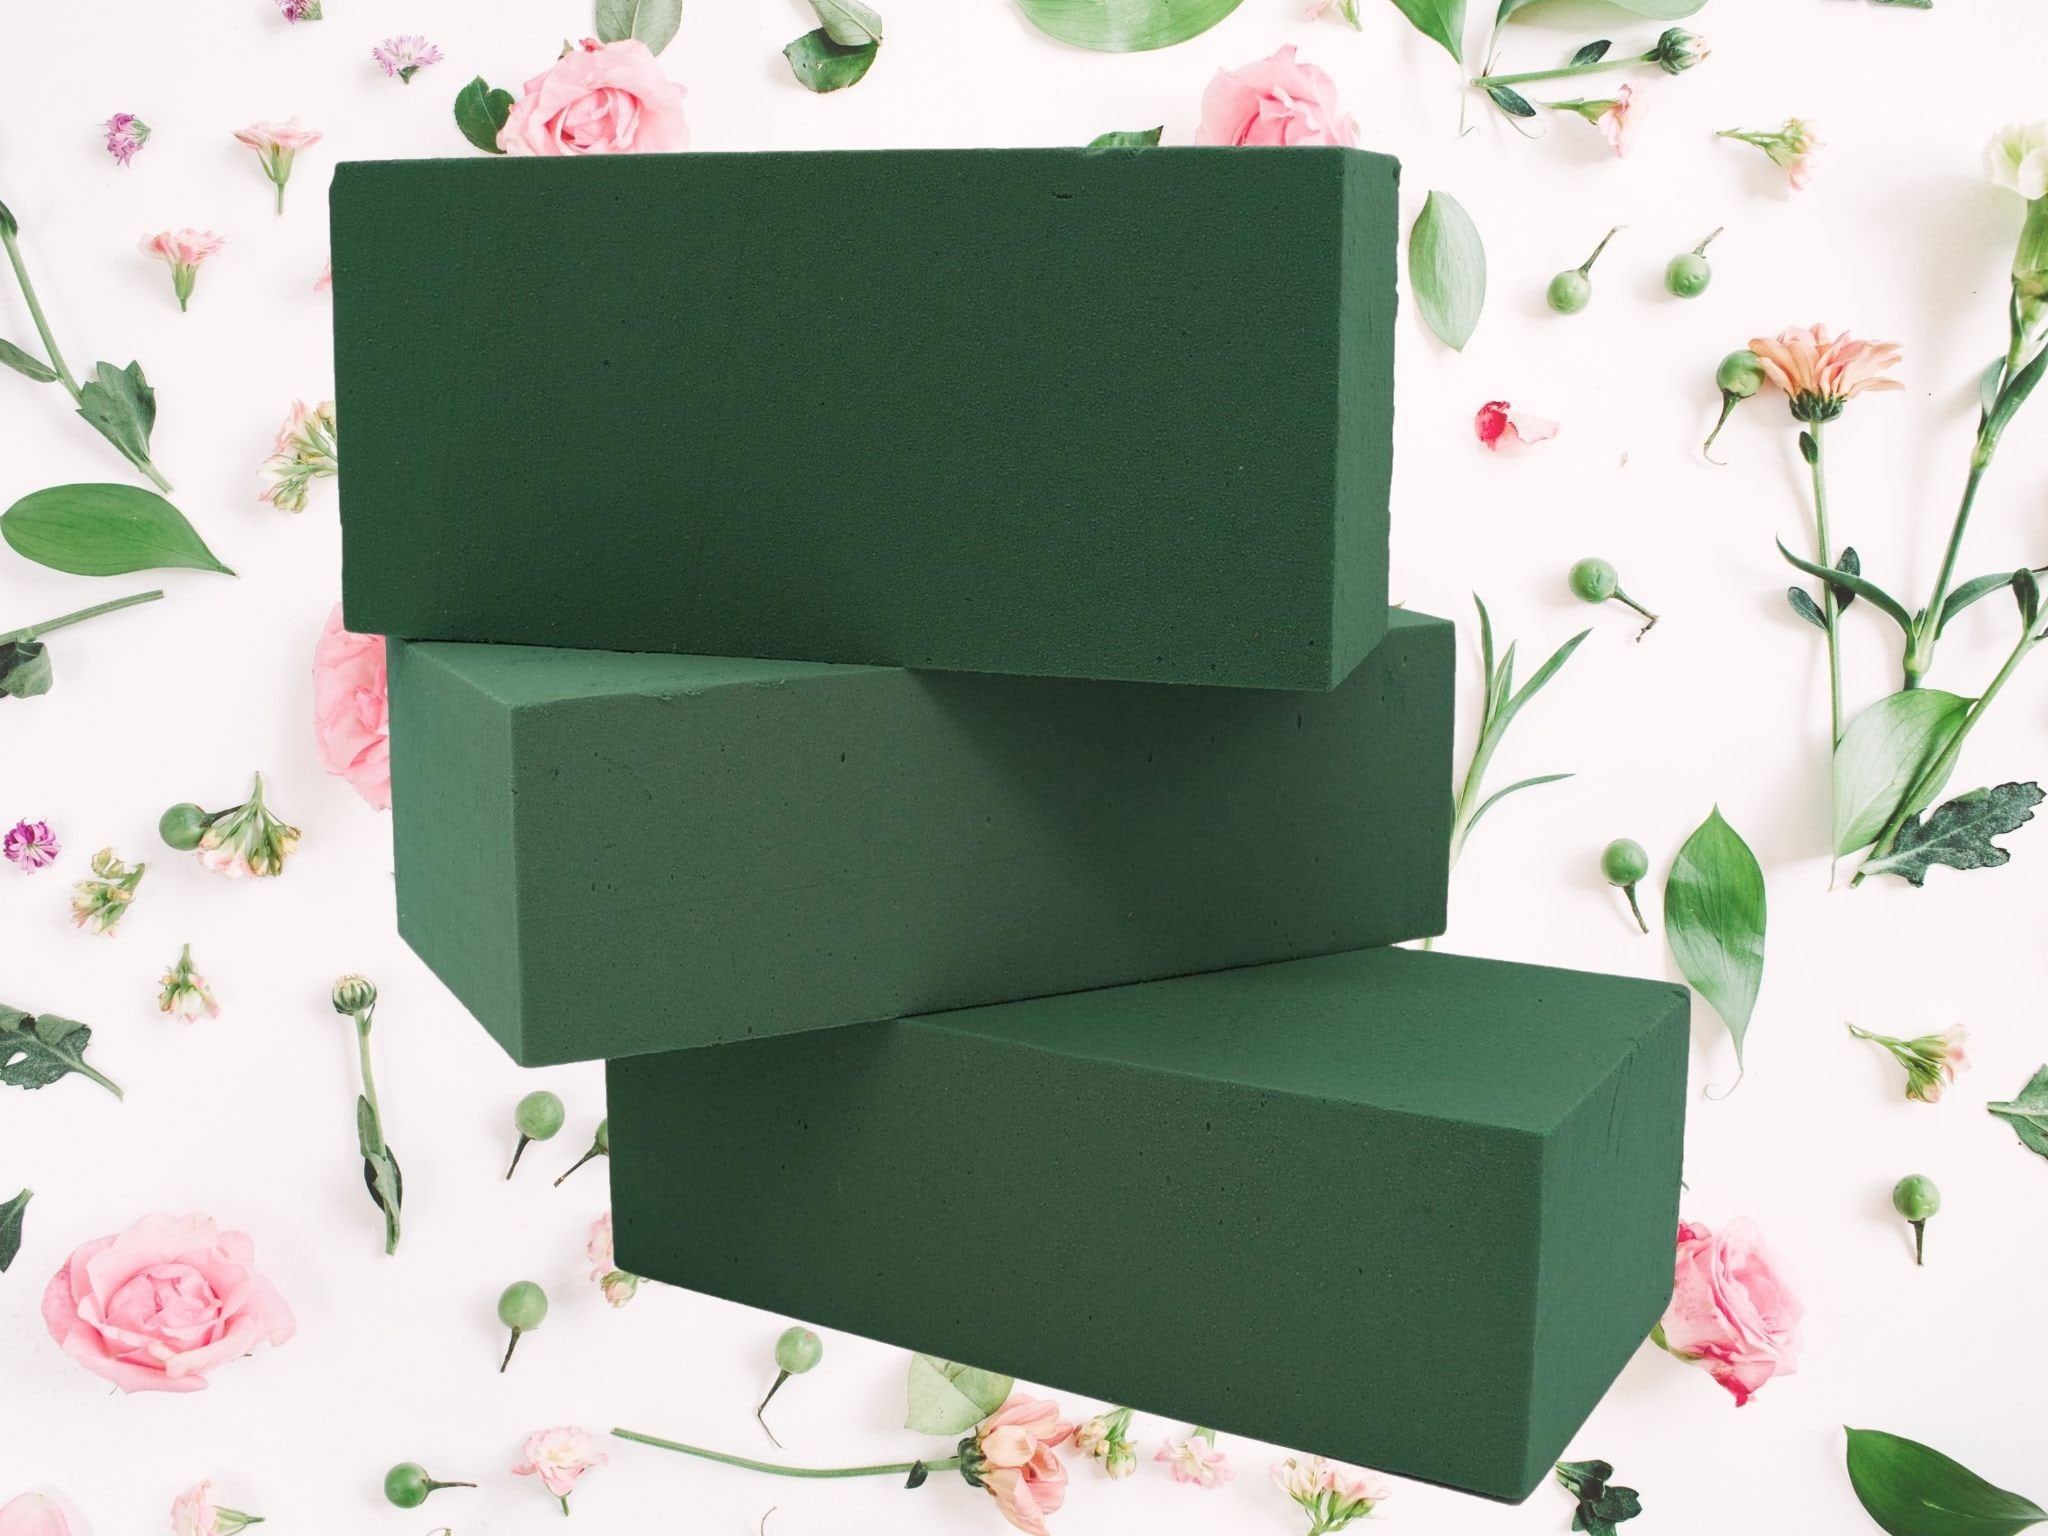 Green Artificial Foam Block, Flower Holder Green